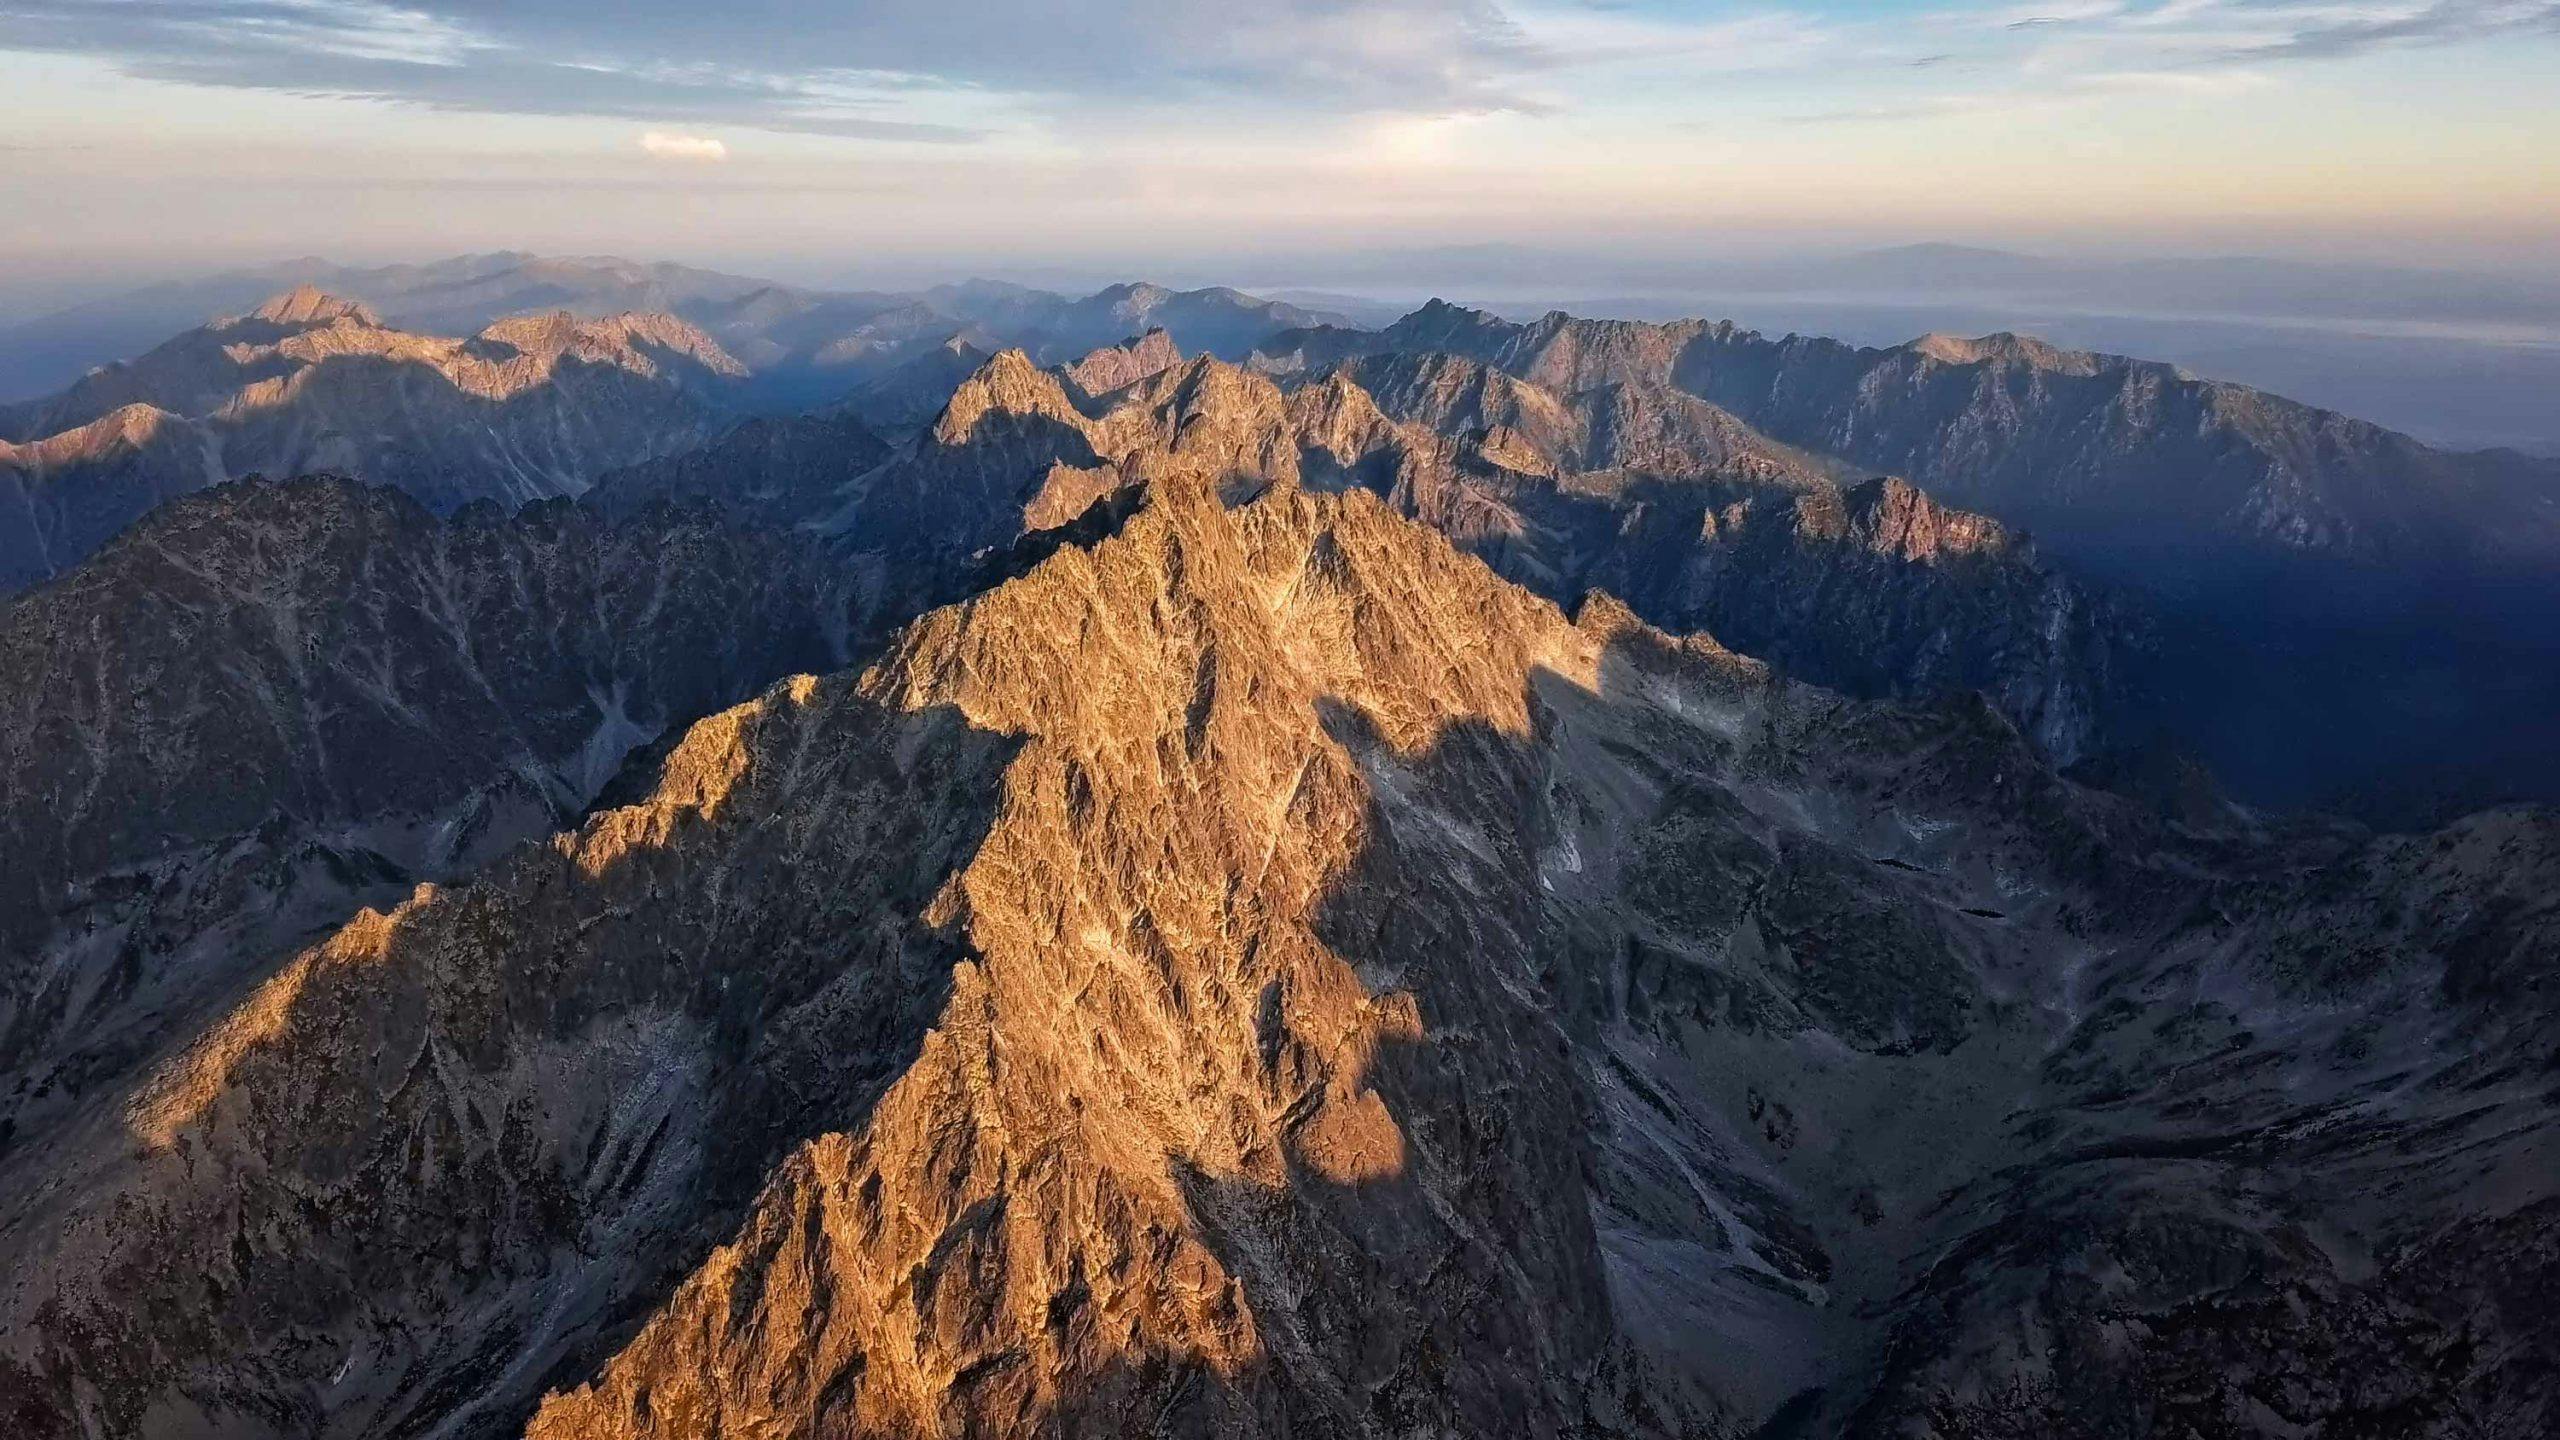 In beeld: Dagje hiken in het Tatras gebergte van Slowakije